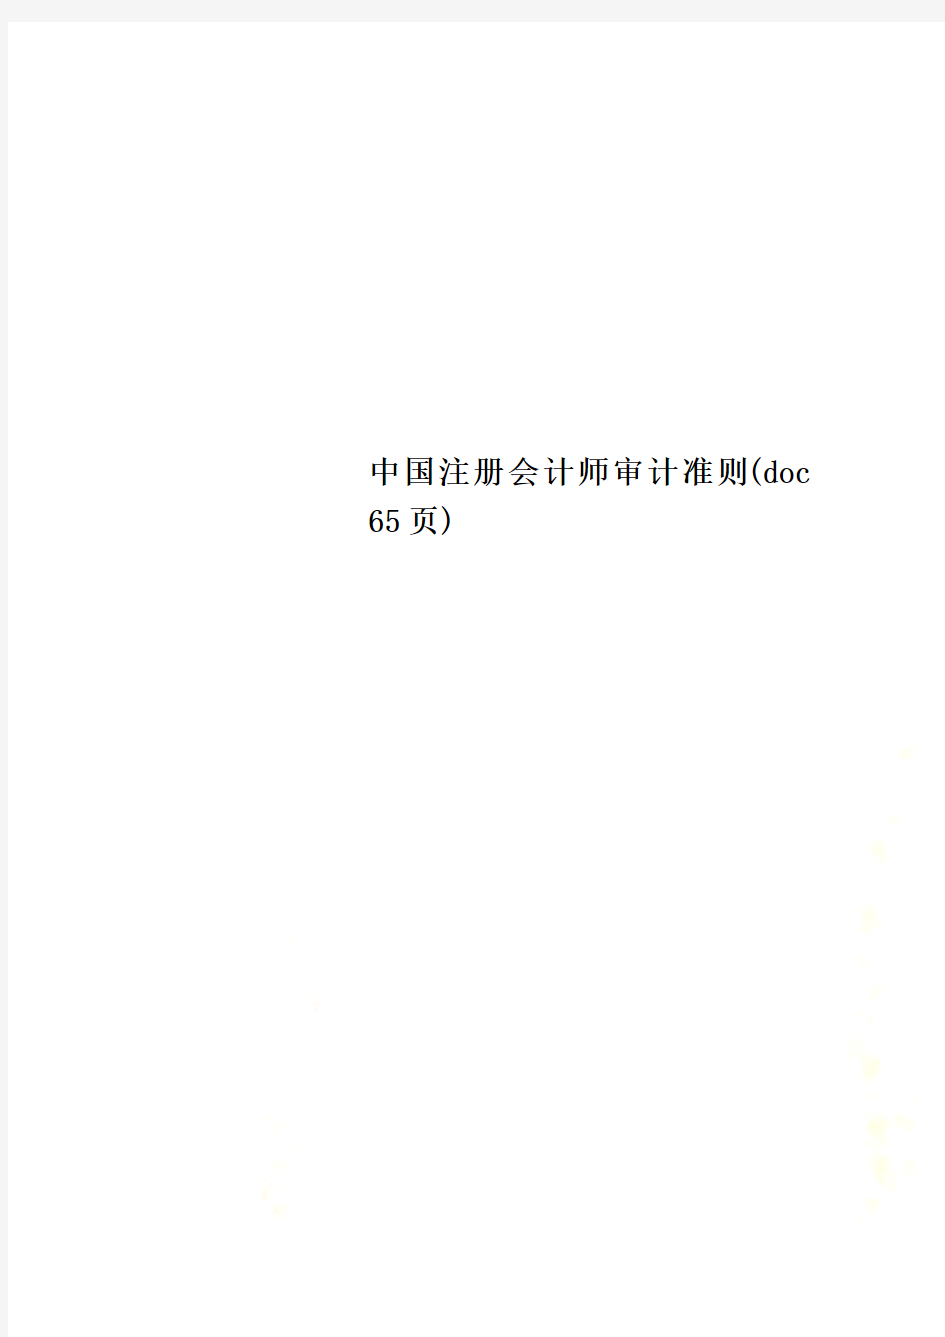 中国注册会计师审计准则(doc 65页)